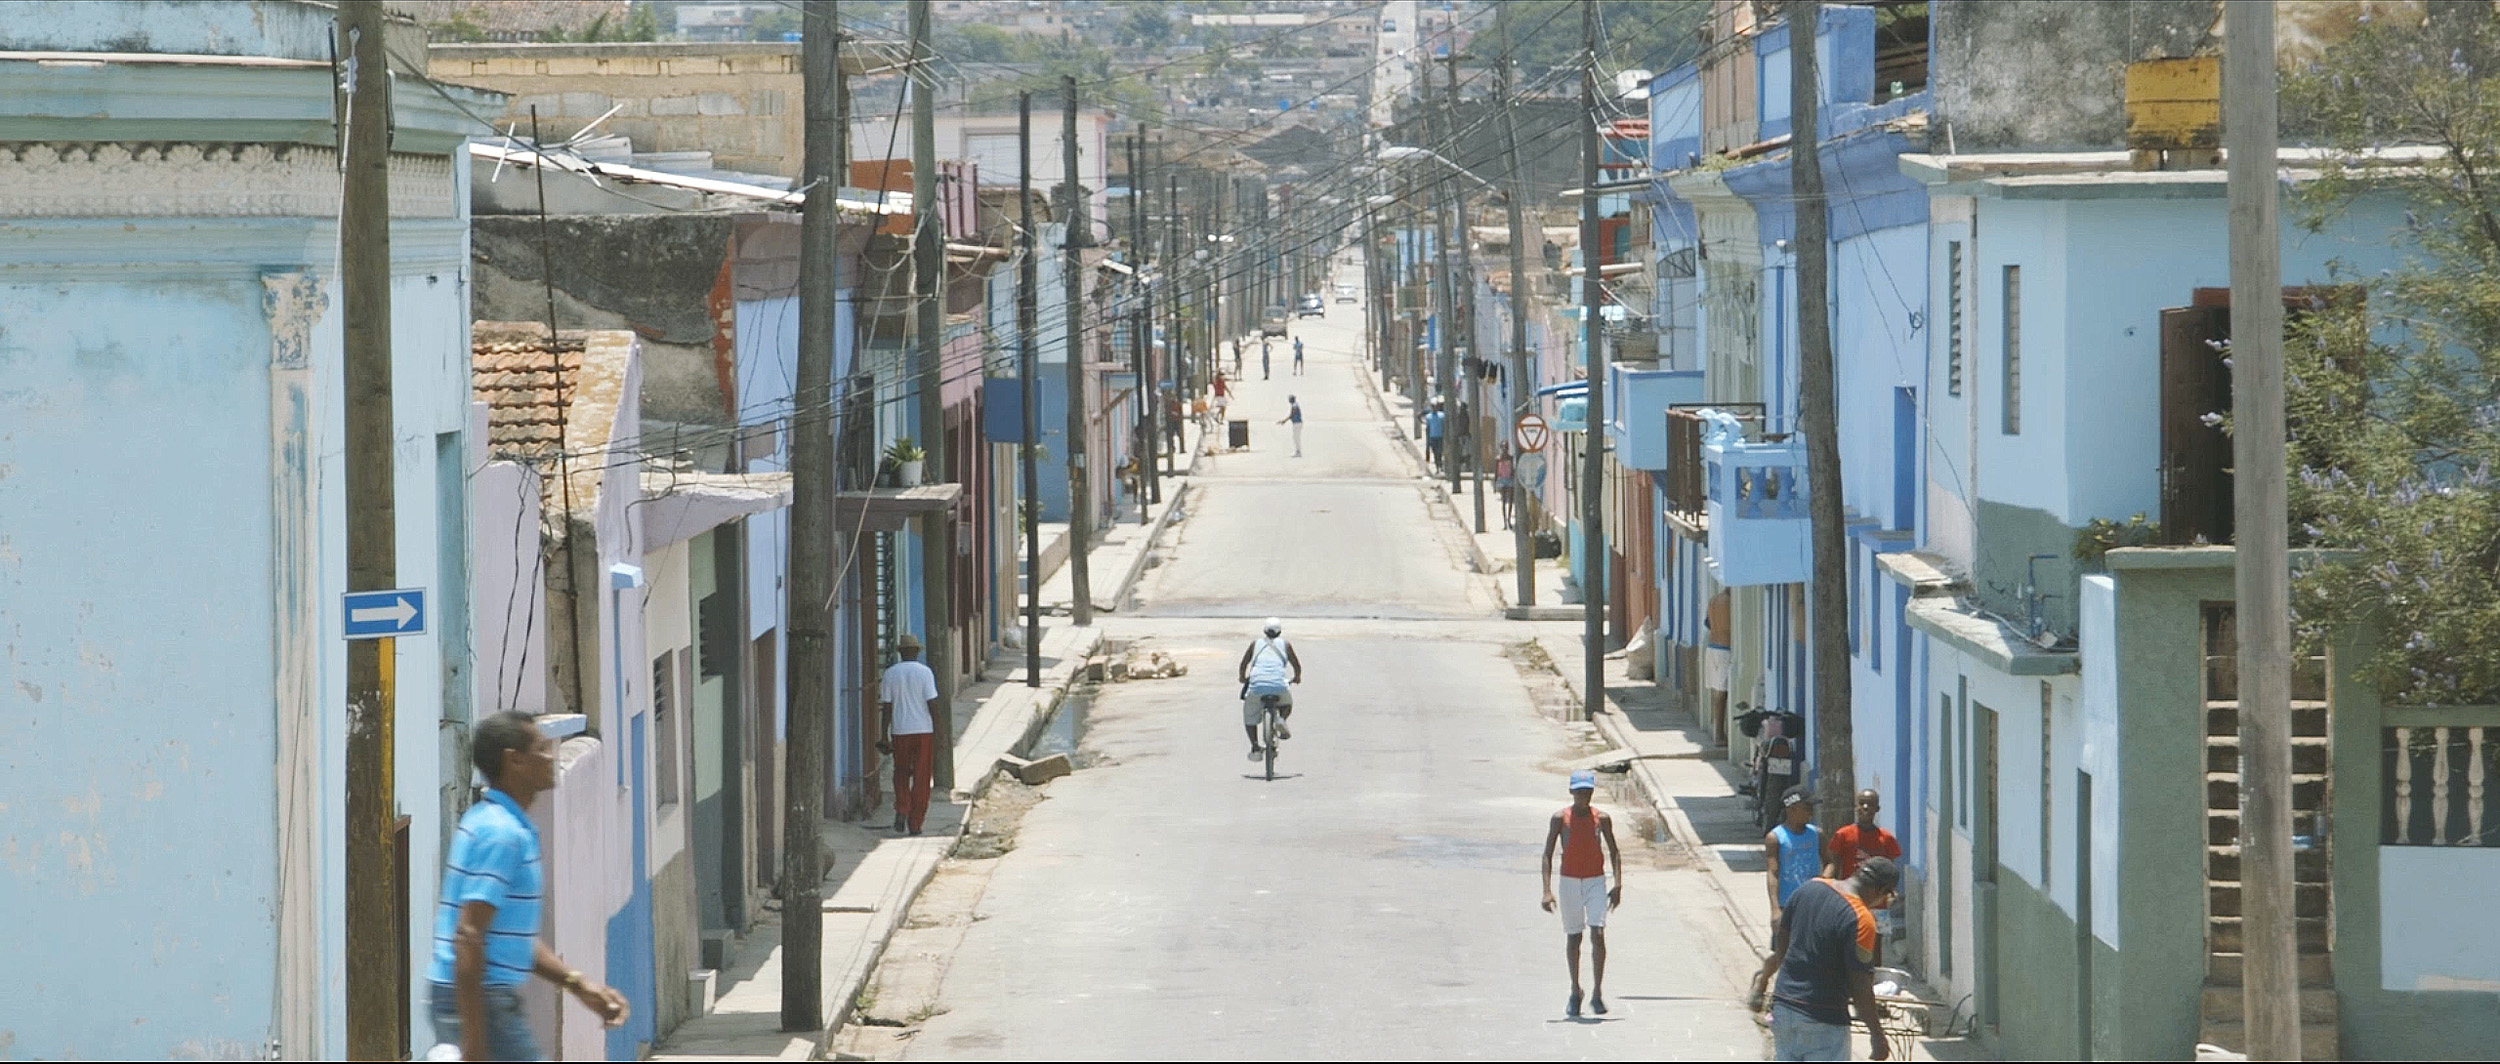 Street in Cuba.